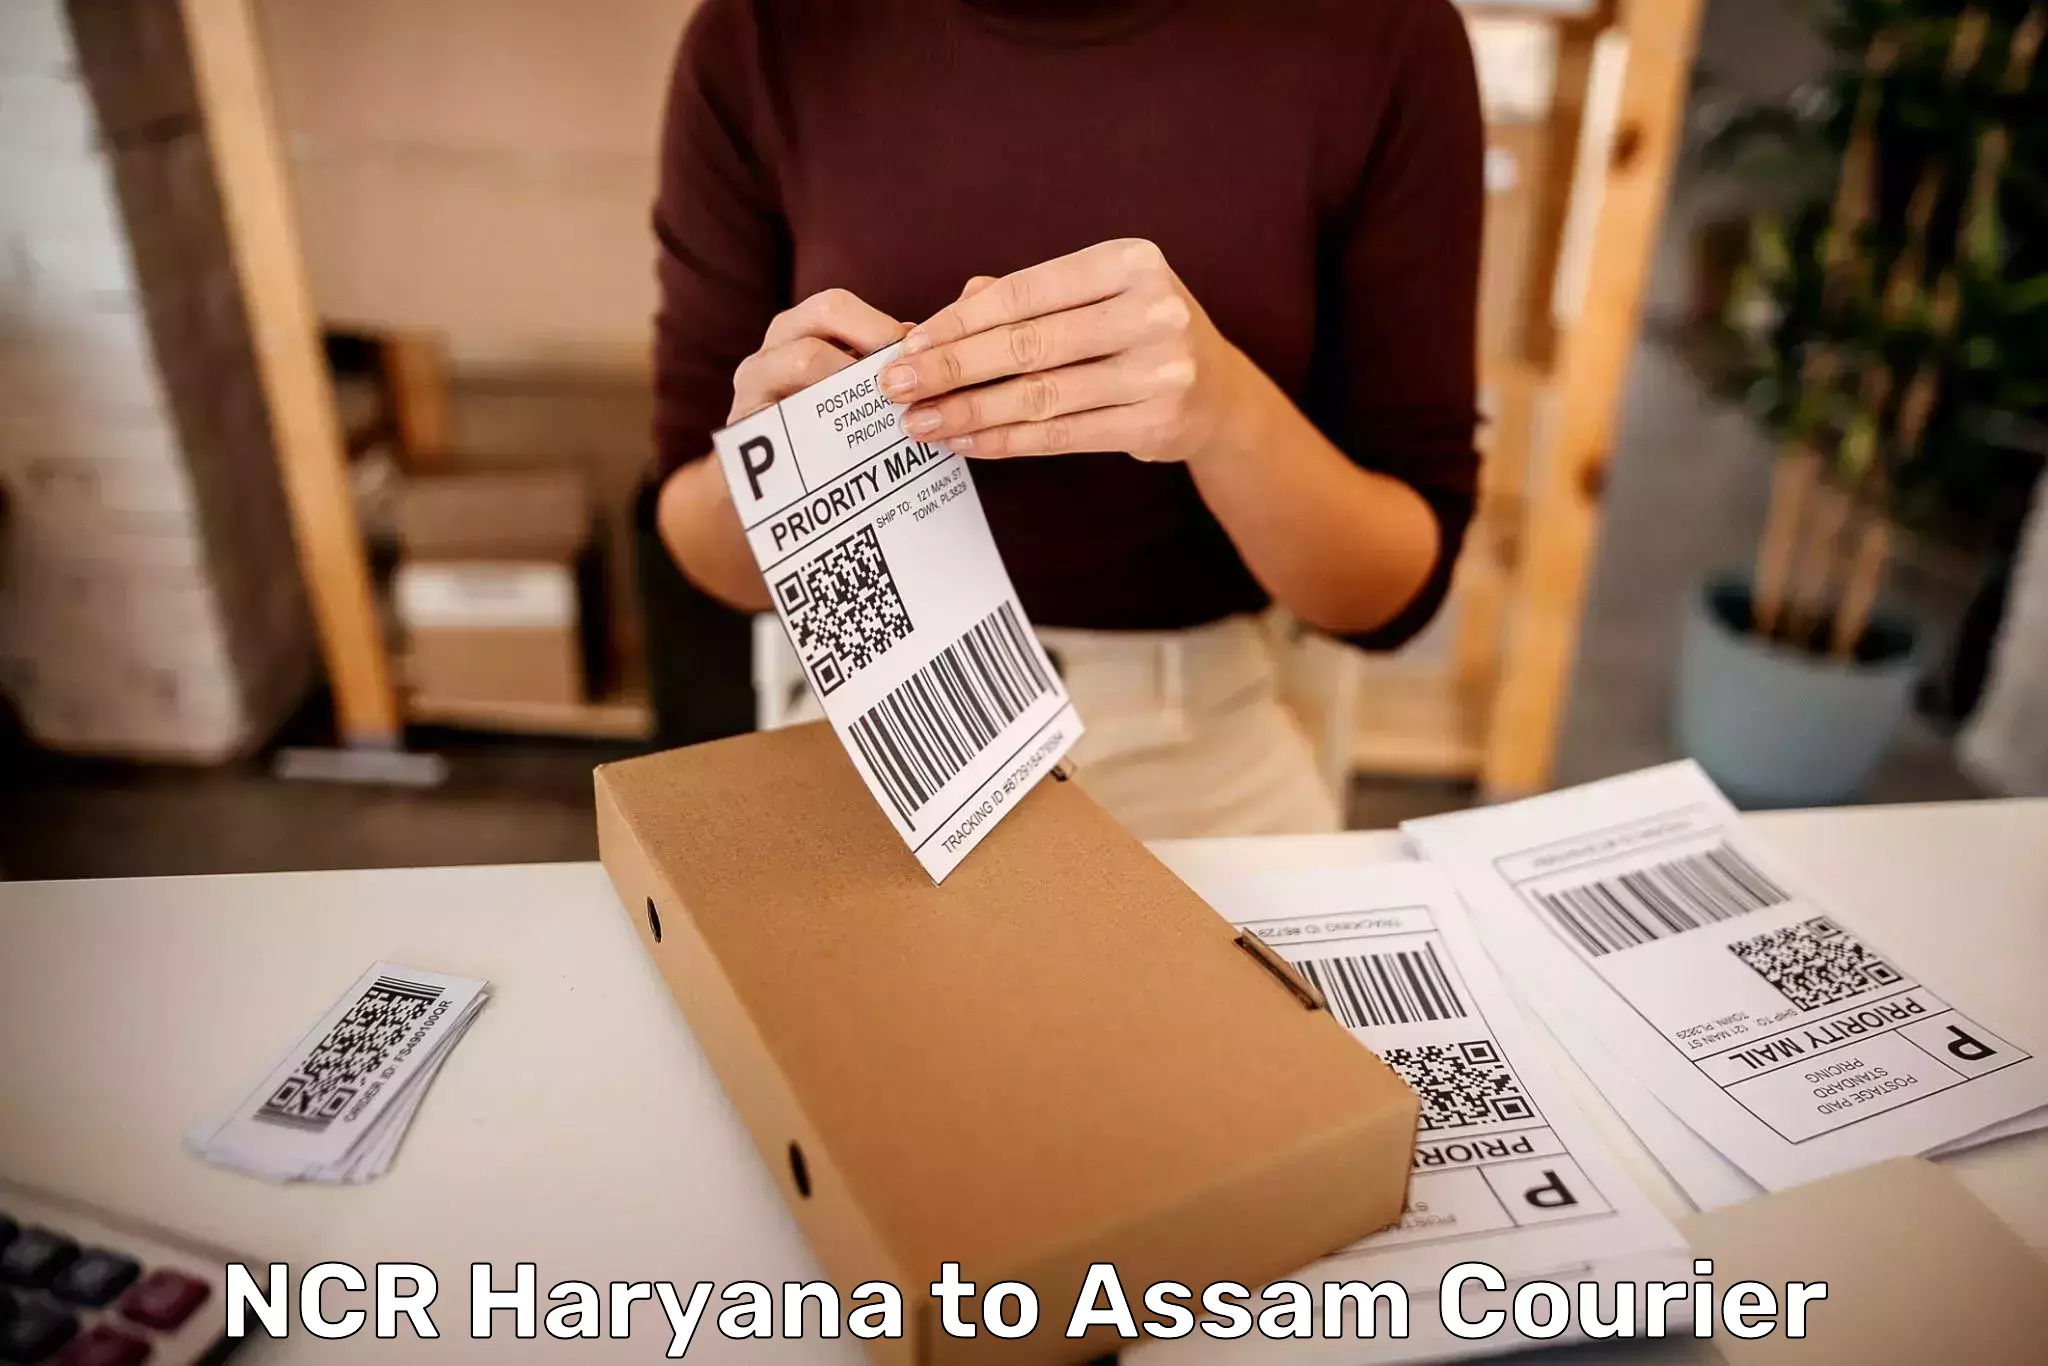 Baggage delivery solutions NCR Haryana to Karbi Anglong